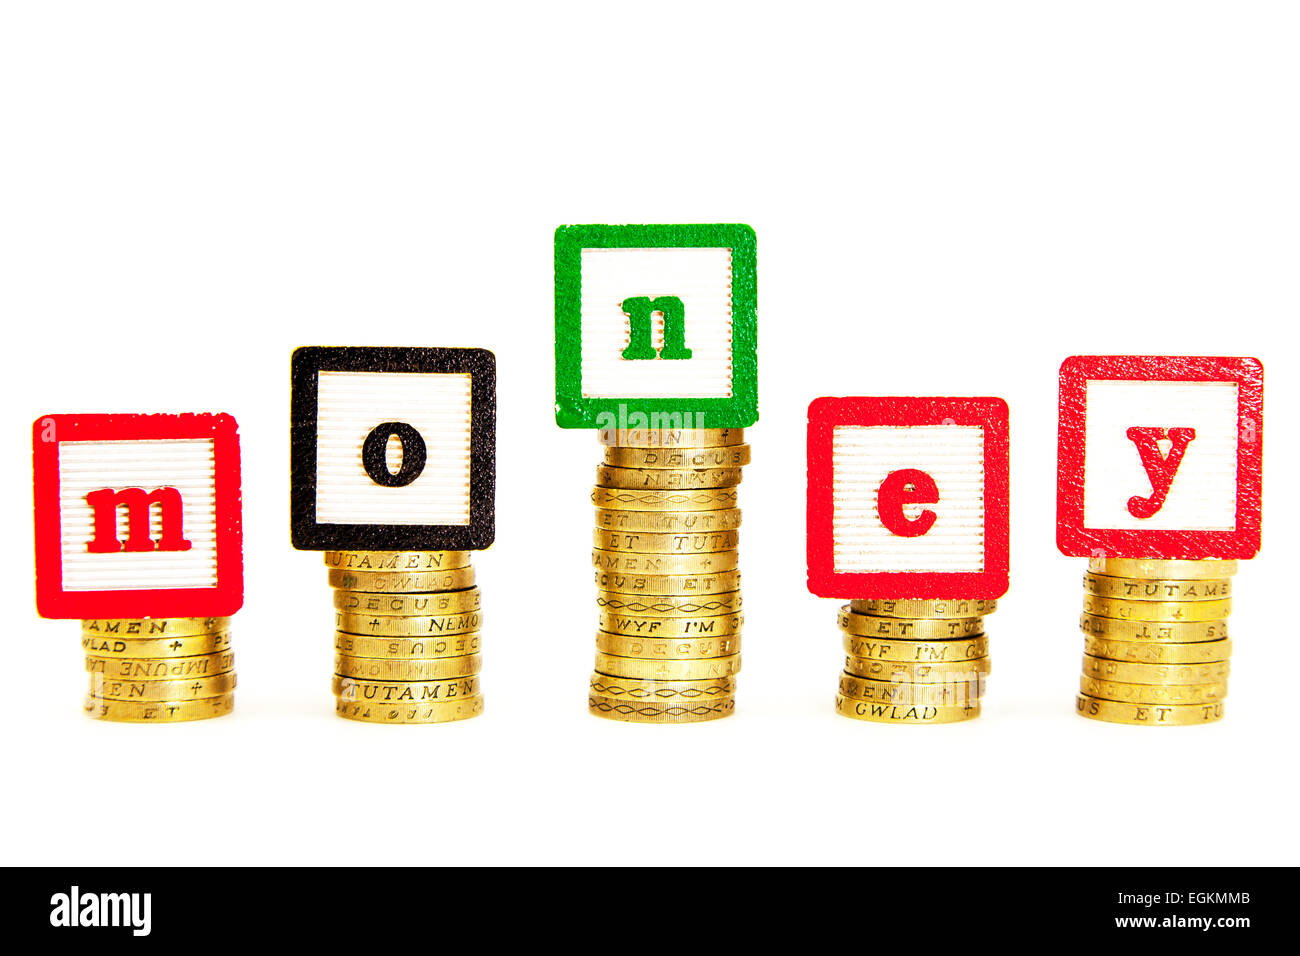 Geld Geld Ausgaben Pfund Währung Fonds Fonds sparen Einsparungen Dosh Wonga Stash Ausschnitt ausschneiden weißen Hintergrundkopie speichern Stockfoto